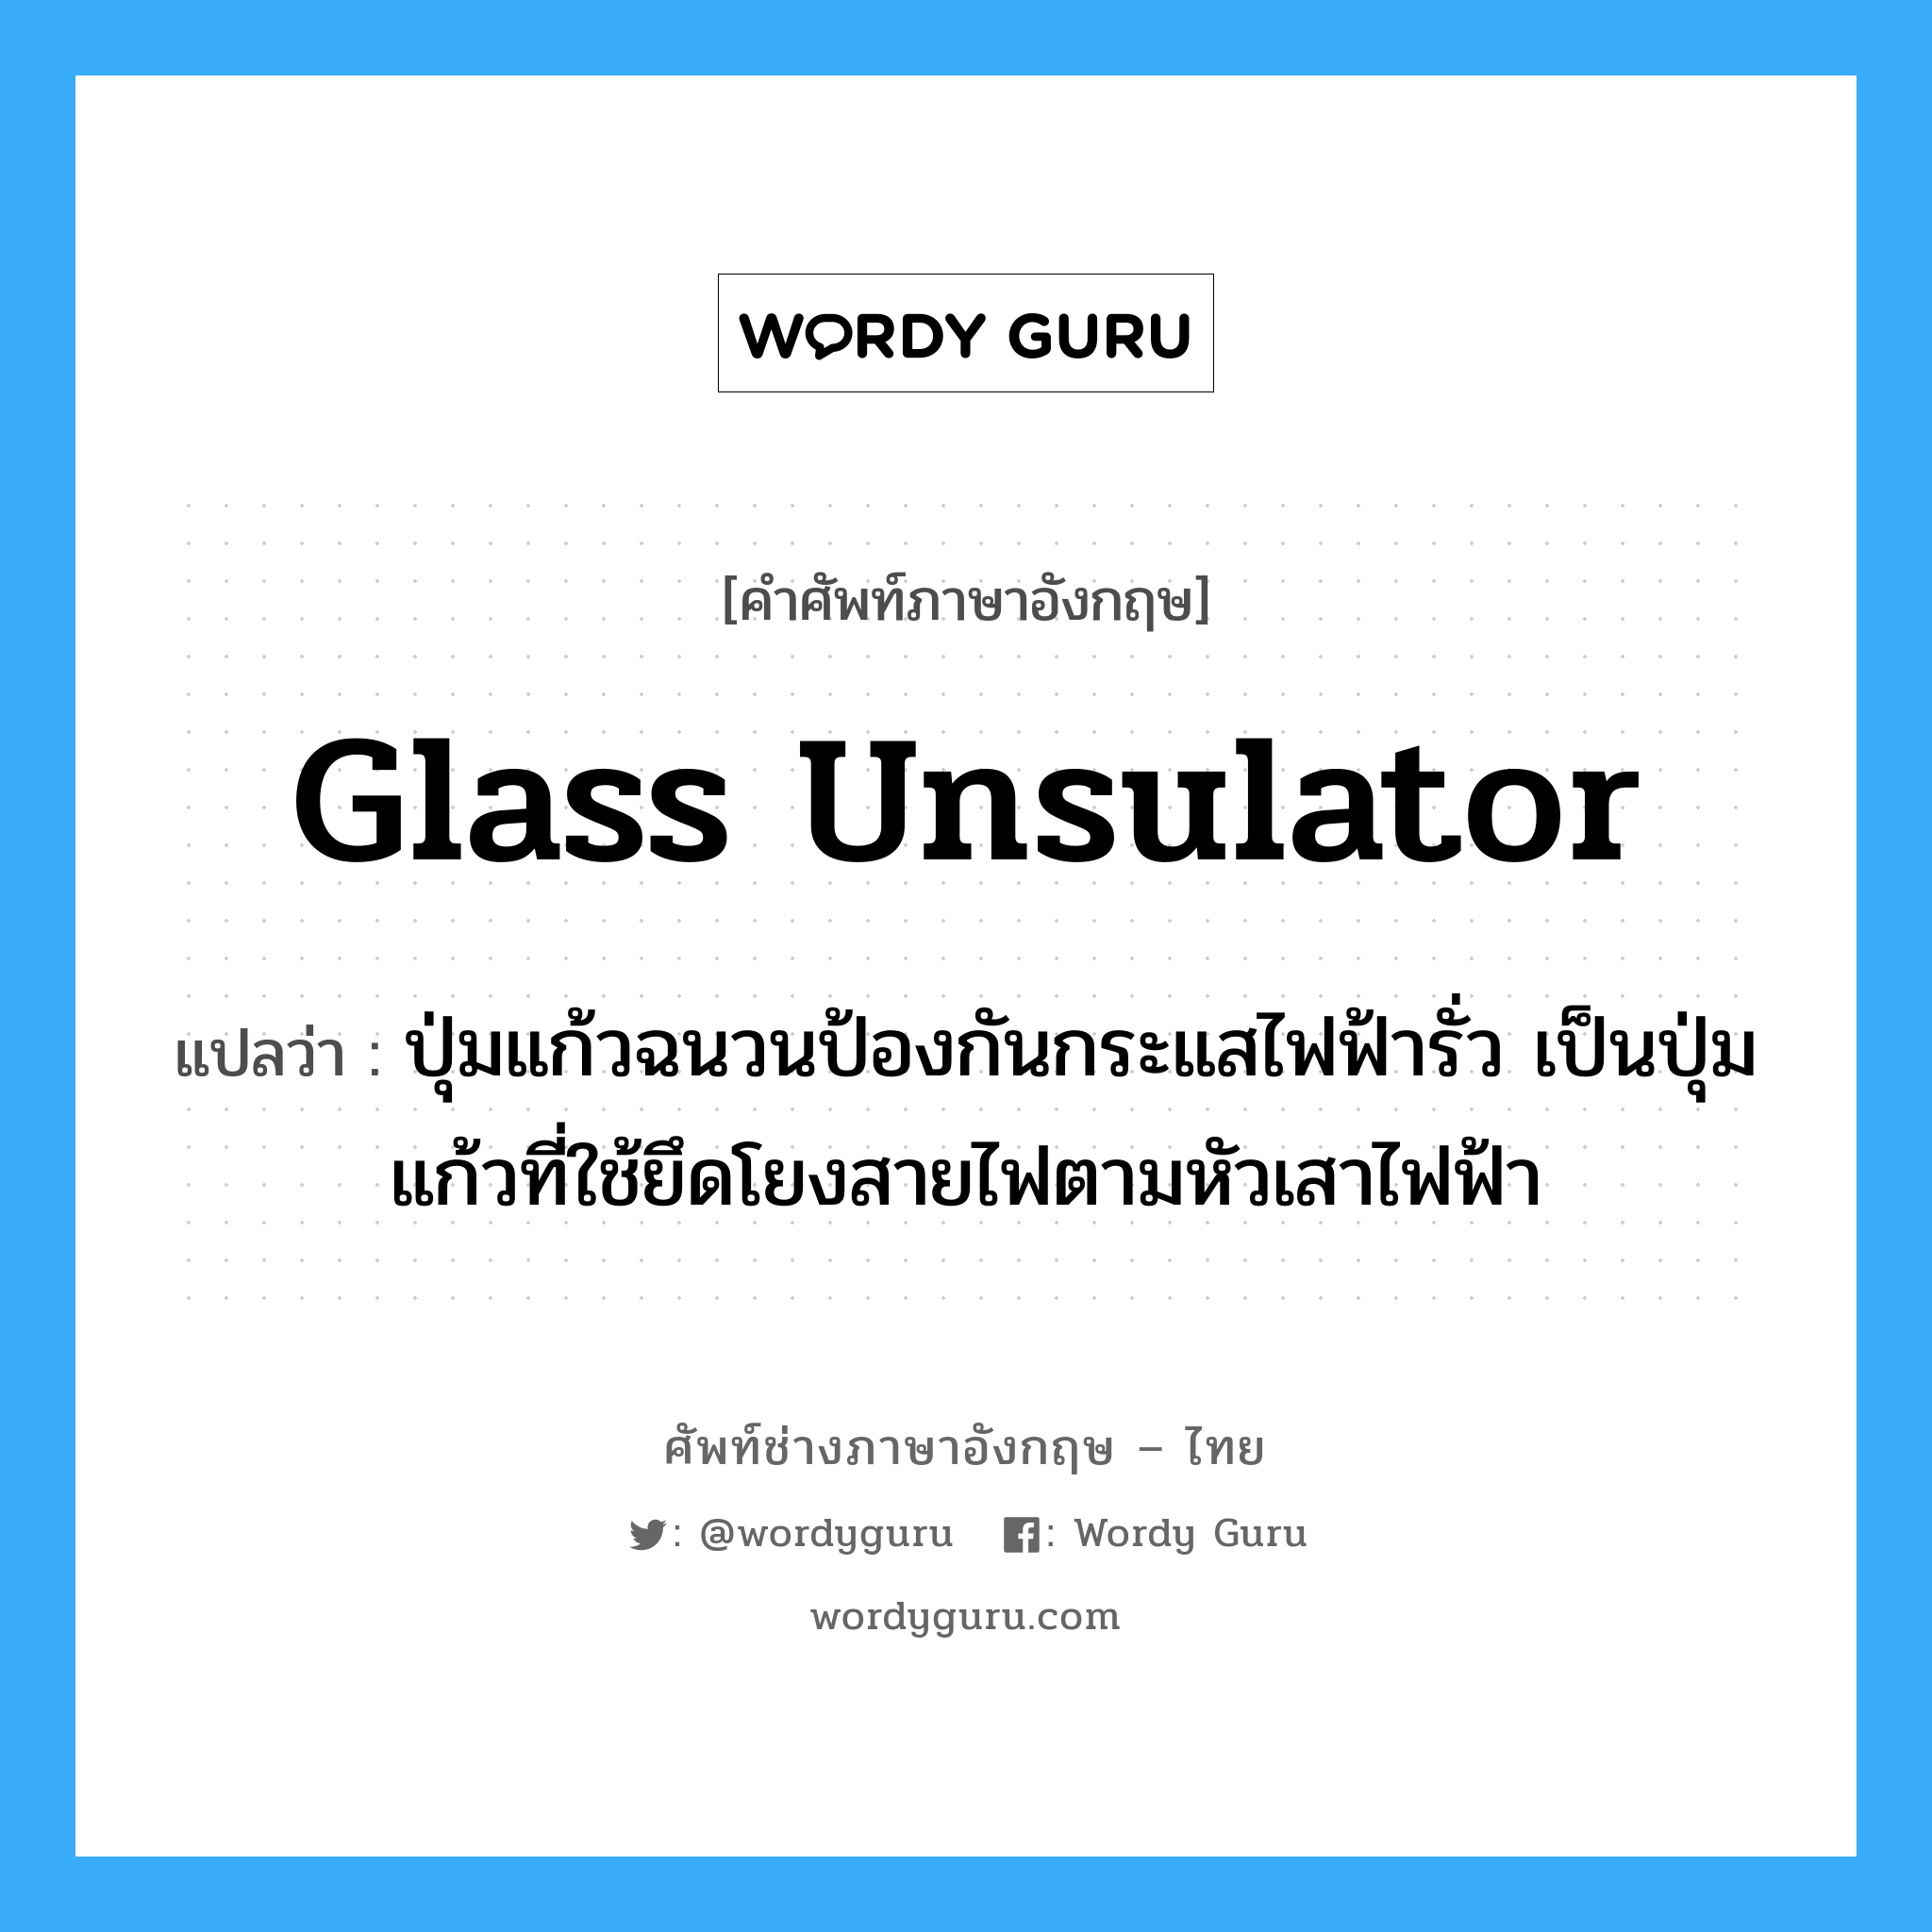 glass unsulator แปลว่า?, คำศัพท์ช่างภาษาอังกฤษ - ไทย glass unsulator คำศัพท์ภาษาอังกฤษ glass unsulator แปลว่า ปุ่มแก้วฉนวนป้องกันกระแสไฟฟ้ารั่ว เป็นปุ่มแก้วที่ใช้ยึดโยงสายไฟตามหัวเสาไฟฟ้า